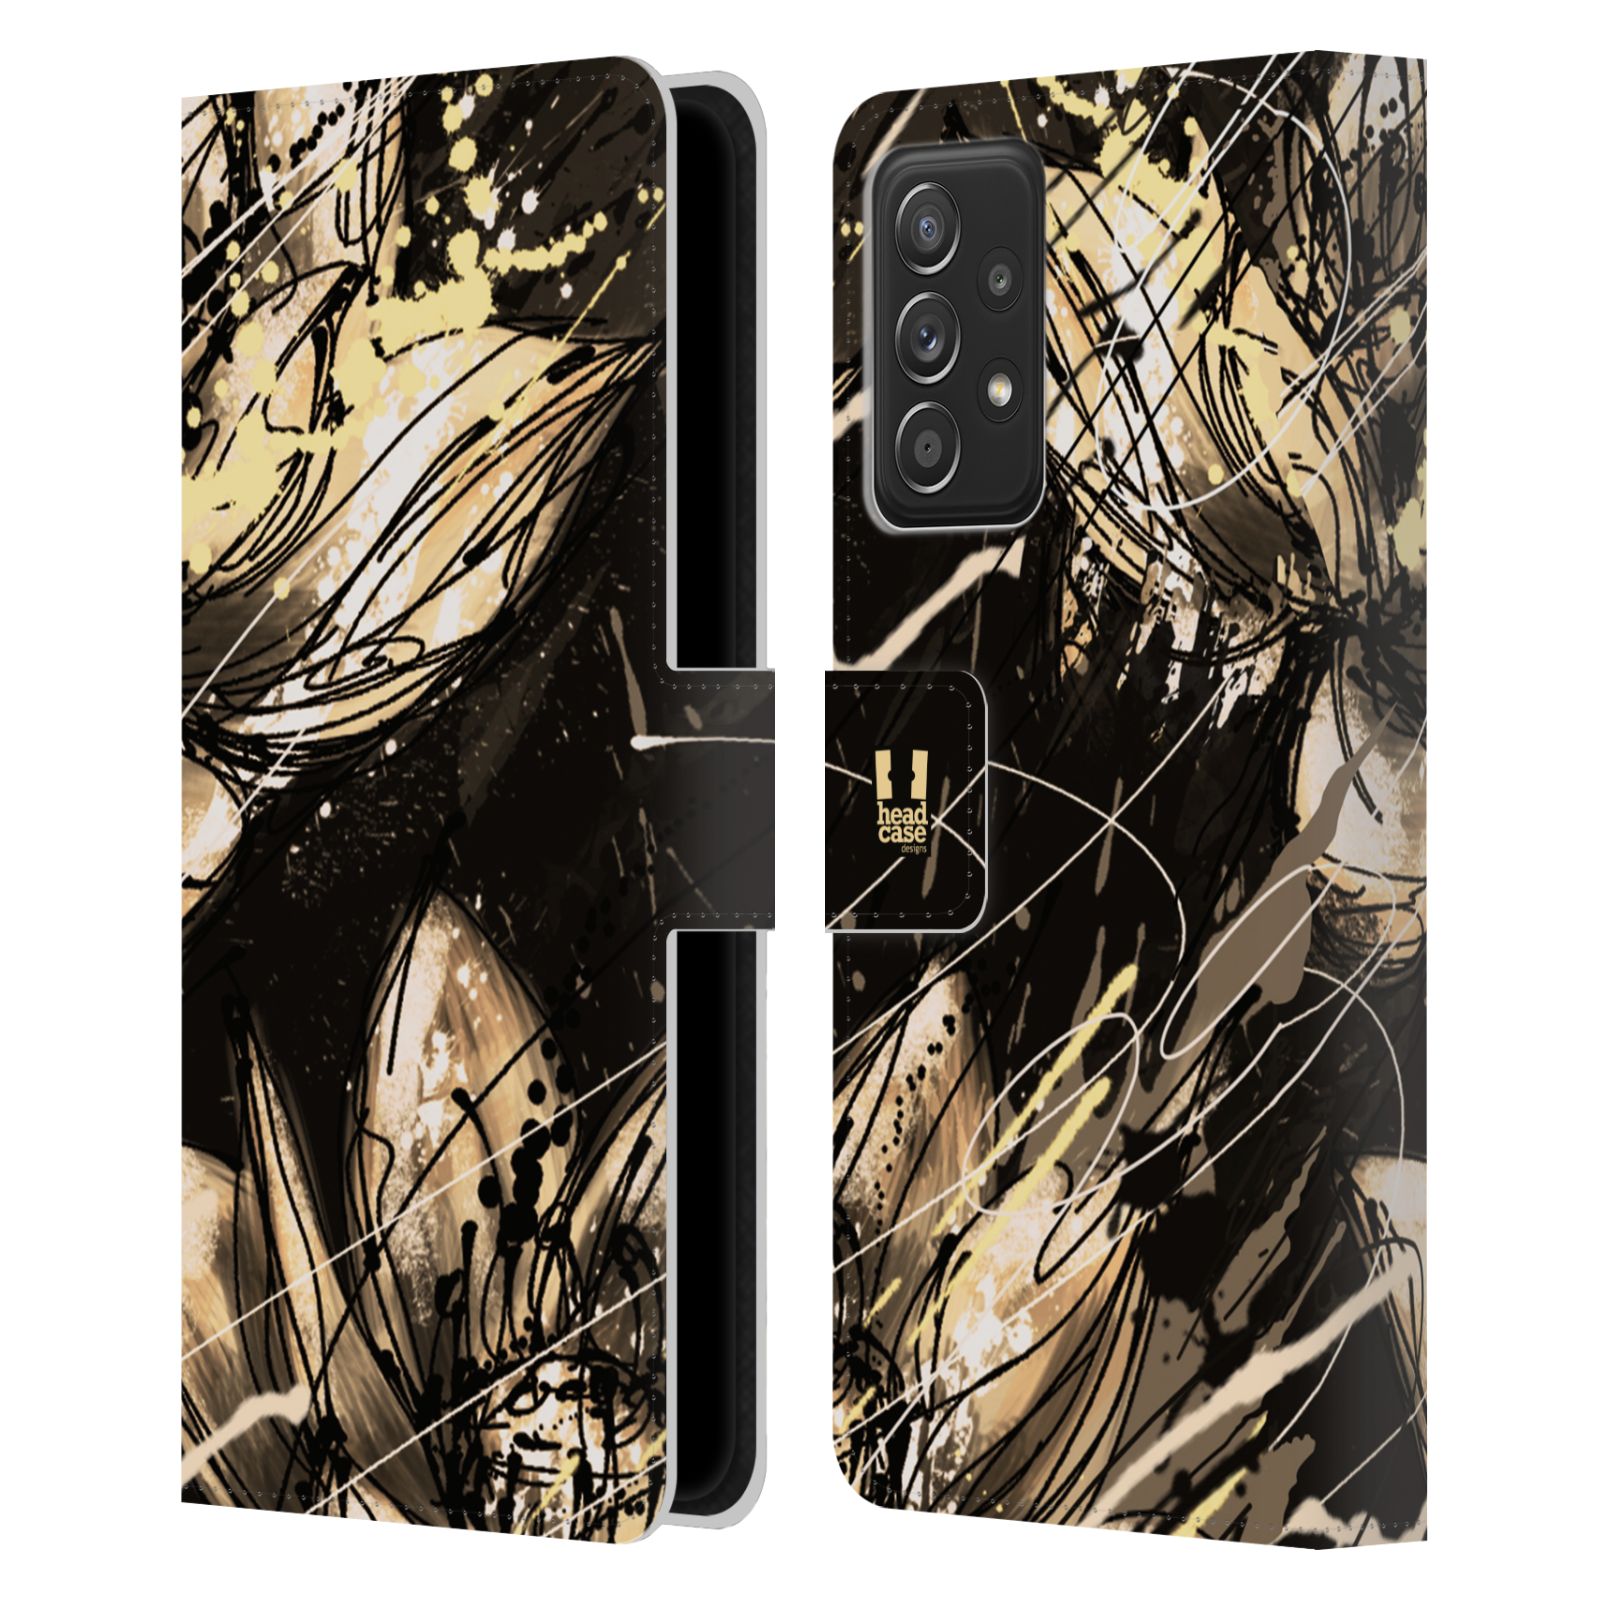 Pouzdro HEAD CASE na mobil Samsung Galaxy A52 / A52 5G / A52s 5G barevná malba květy lotos